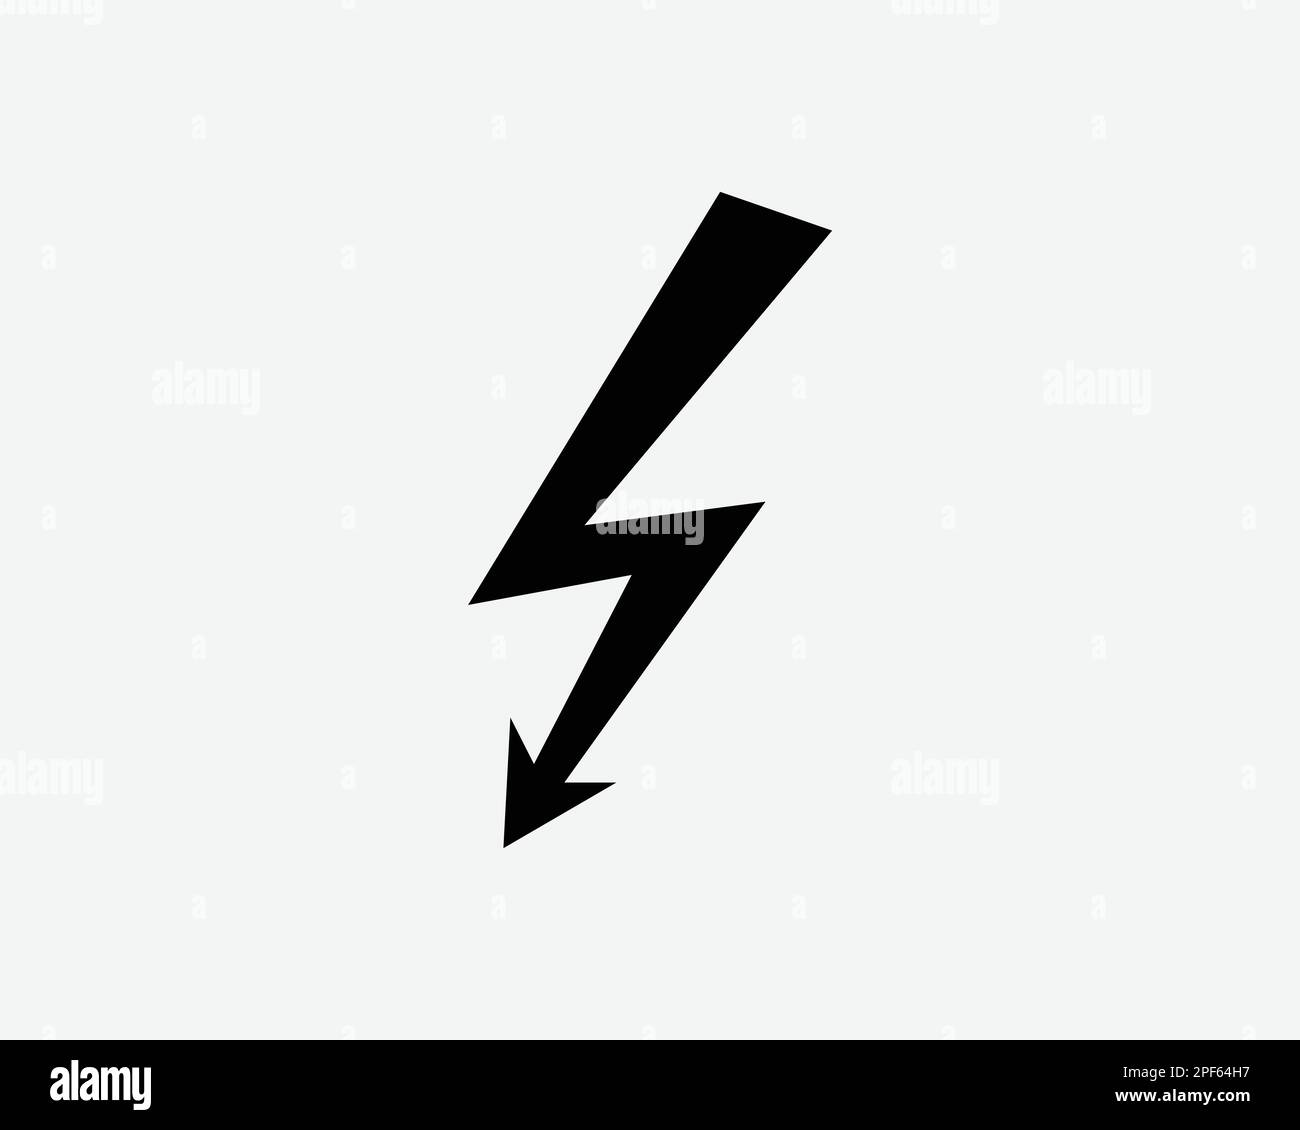 Elettricità elettrica elettrico tuono illuminazione bullone nero bianco silhouette simbolo icona segno grafico clipart illustrazione pittogramma vettore Illustrazione Vettoriale